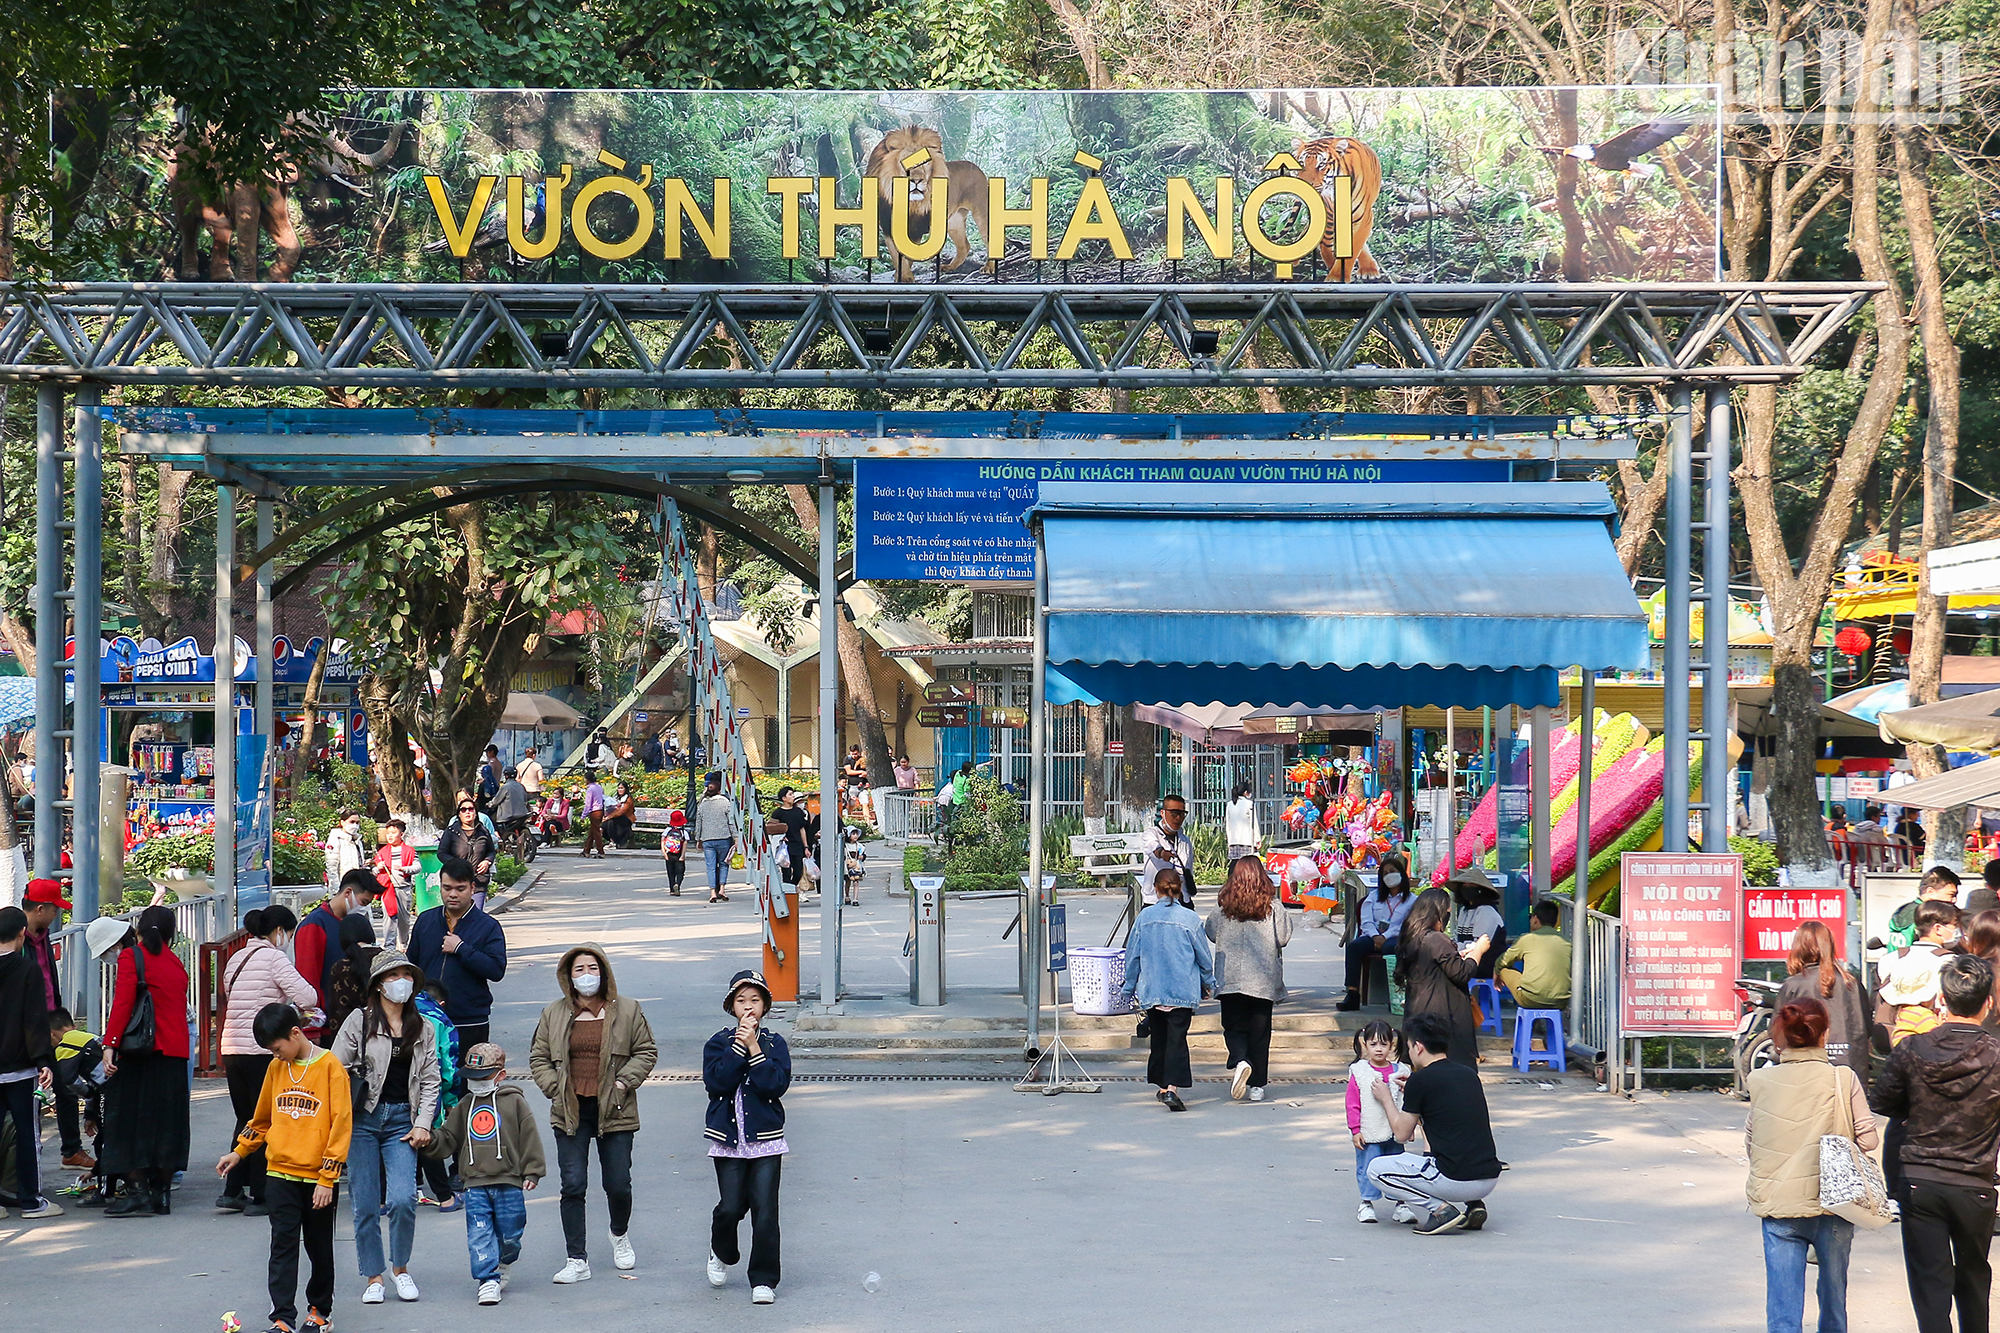 Hanoï : le parc zoologique de Thu Lê et ses particularités